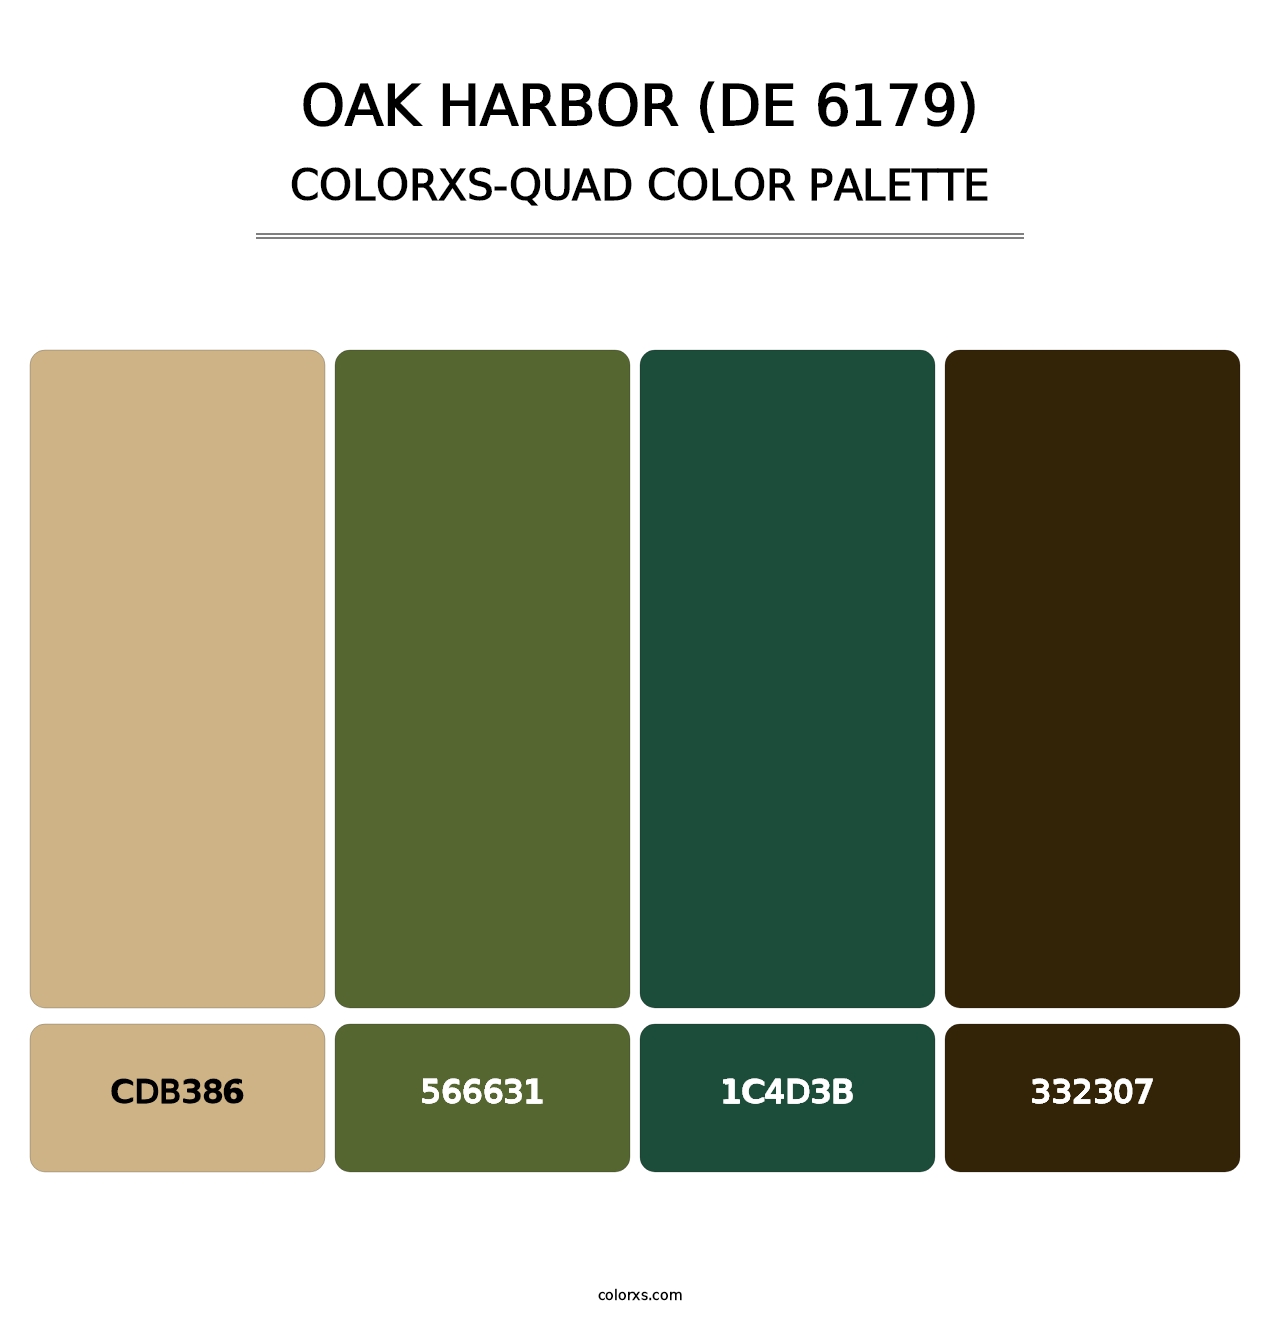 Oak Harbor (DE 6179) - Colorxs Quad Palette